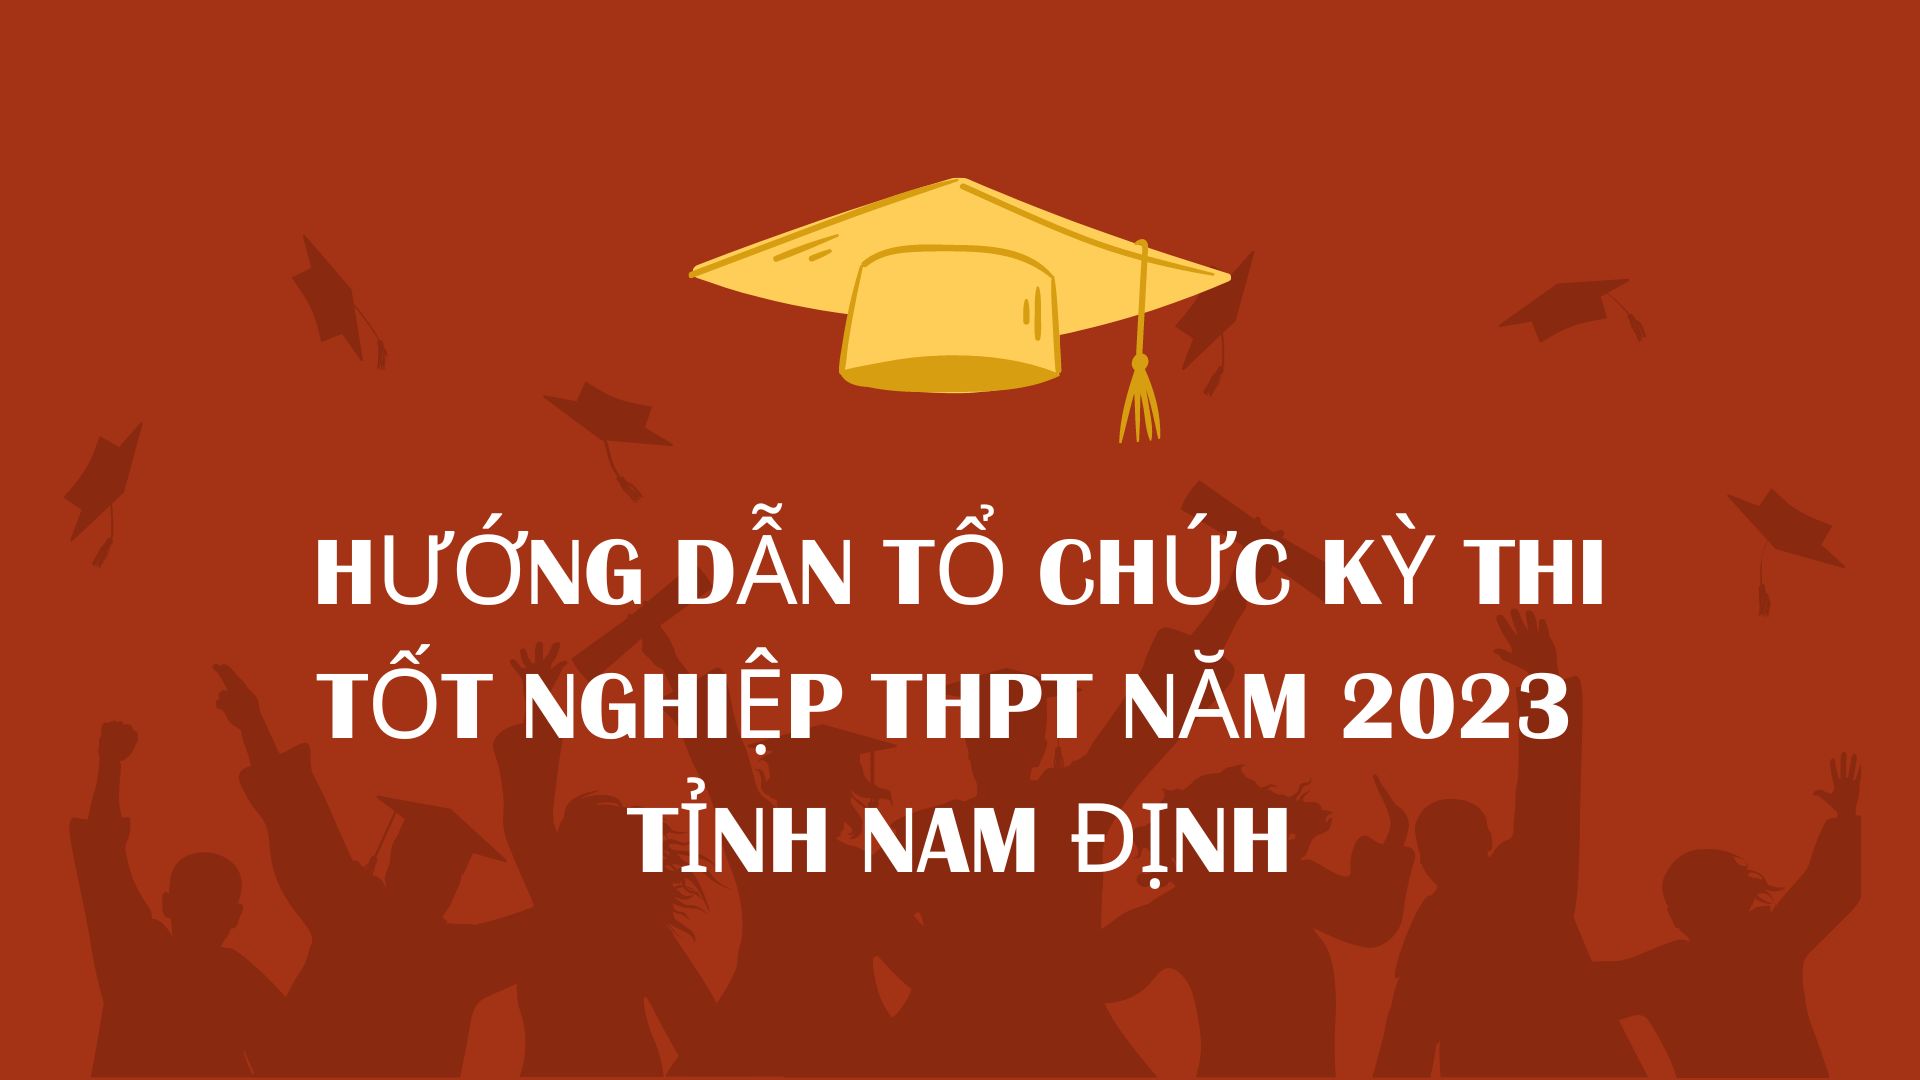 Vv hướng dẫn tổ chức Kỳ thi tốt nghiệp THPT năm 2023 tỉnh Nam Định